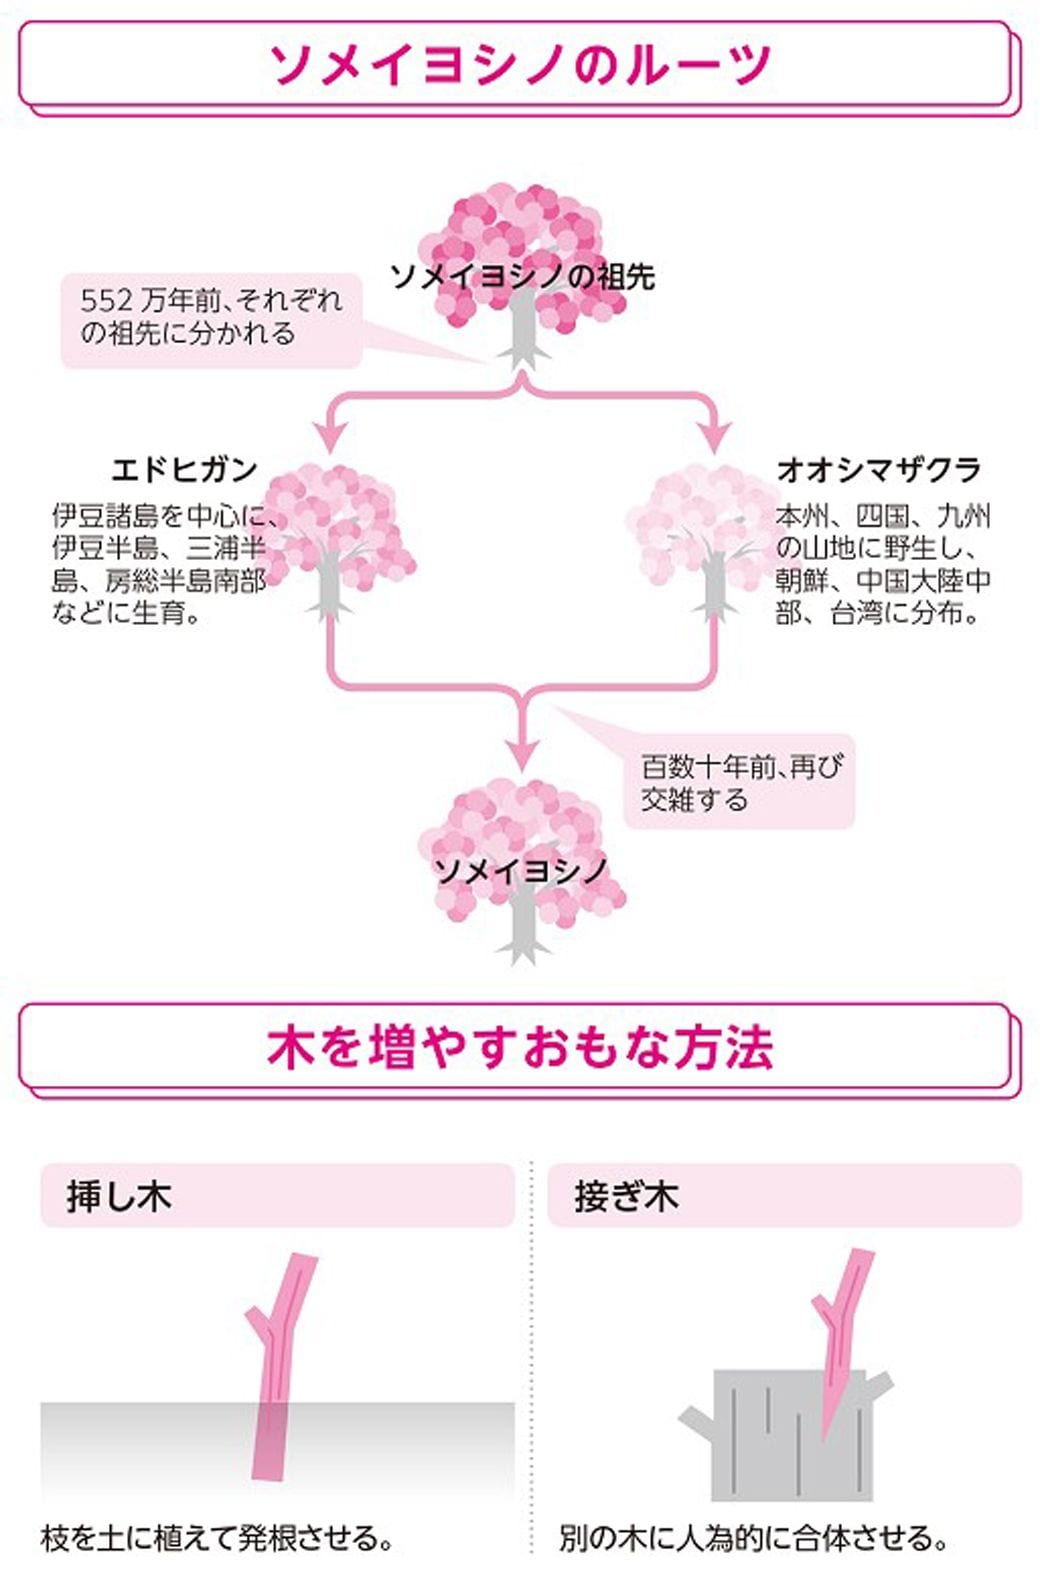 桜の花が一斉に咲き始める 意外すぎる 理由 天気 天候 東洋経済オンライン 社会をよくする経済ニュース